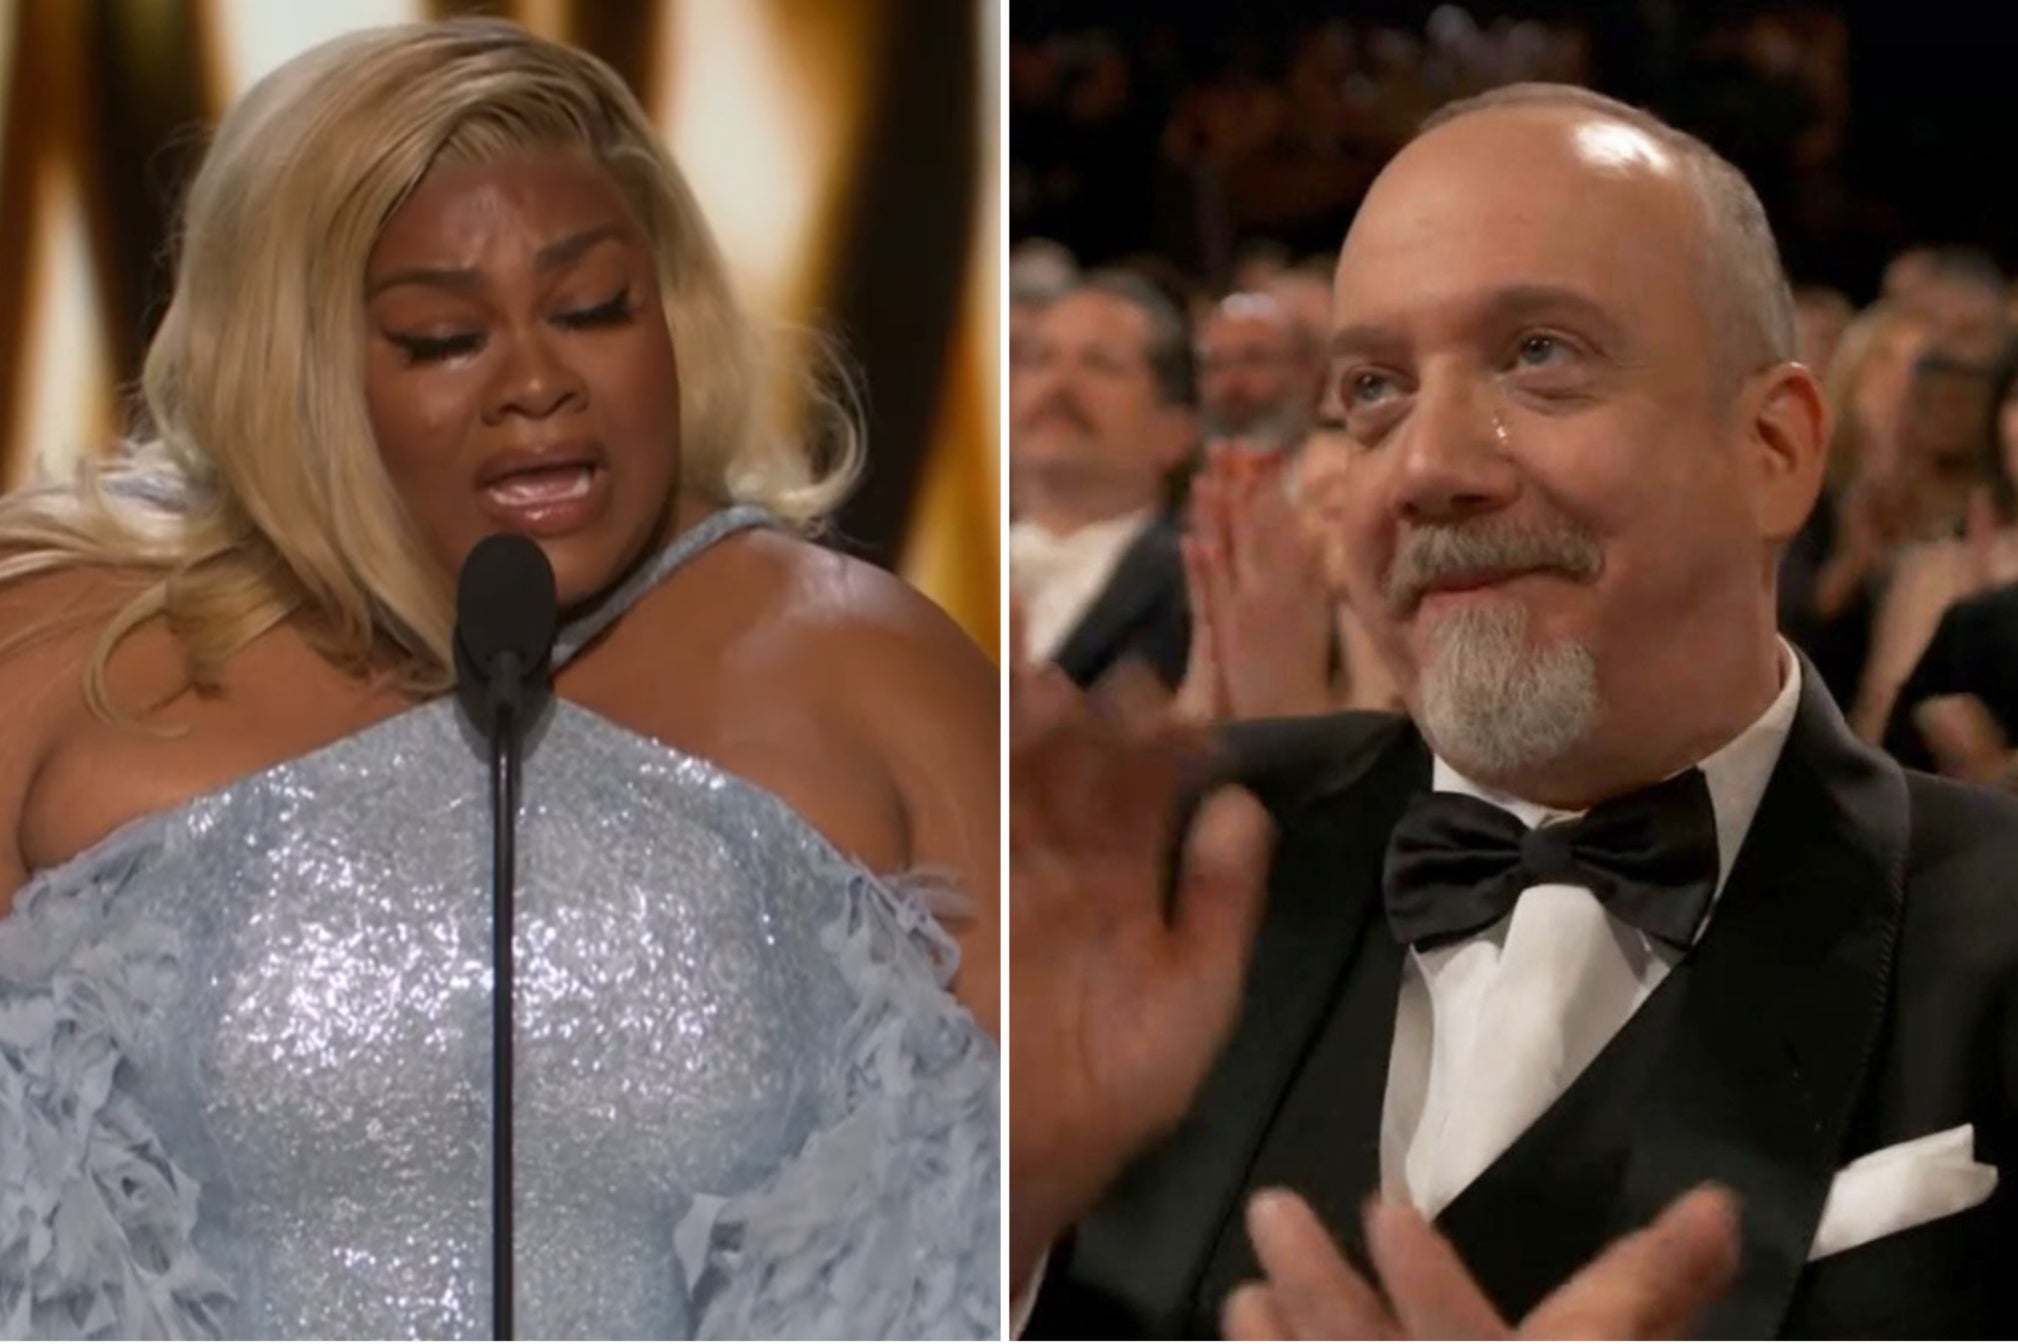 Paul Giamatti sheds a tear over Da’Vine Joy Randolph’s acceptance speech at the Oscars